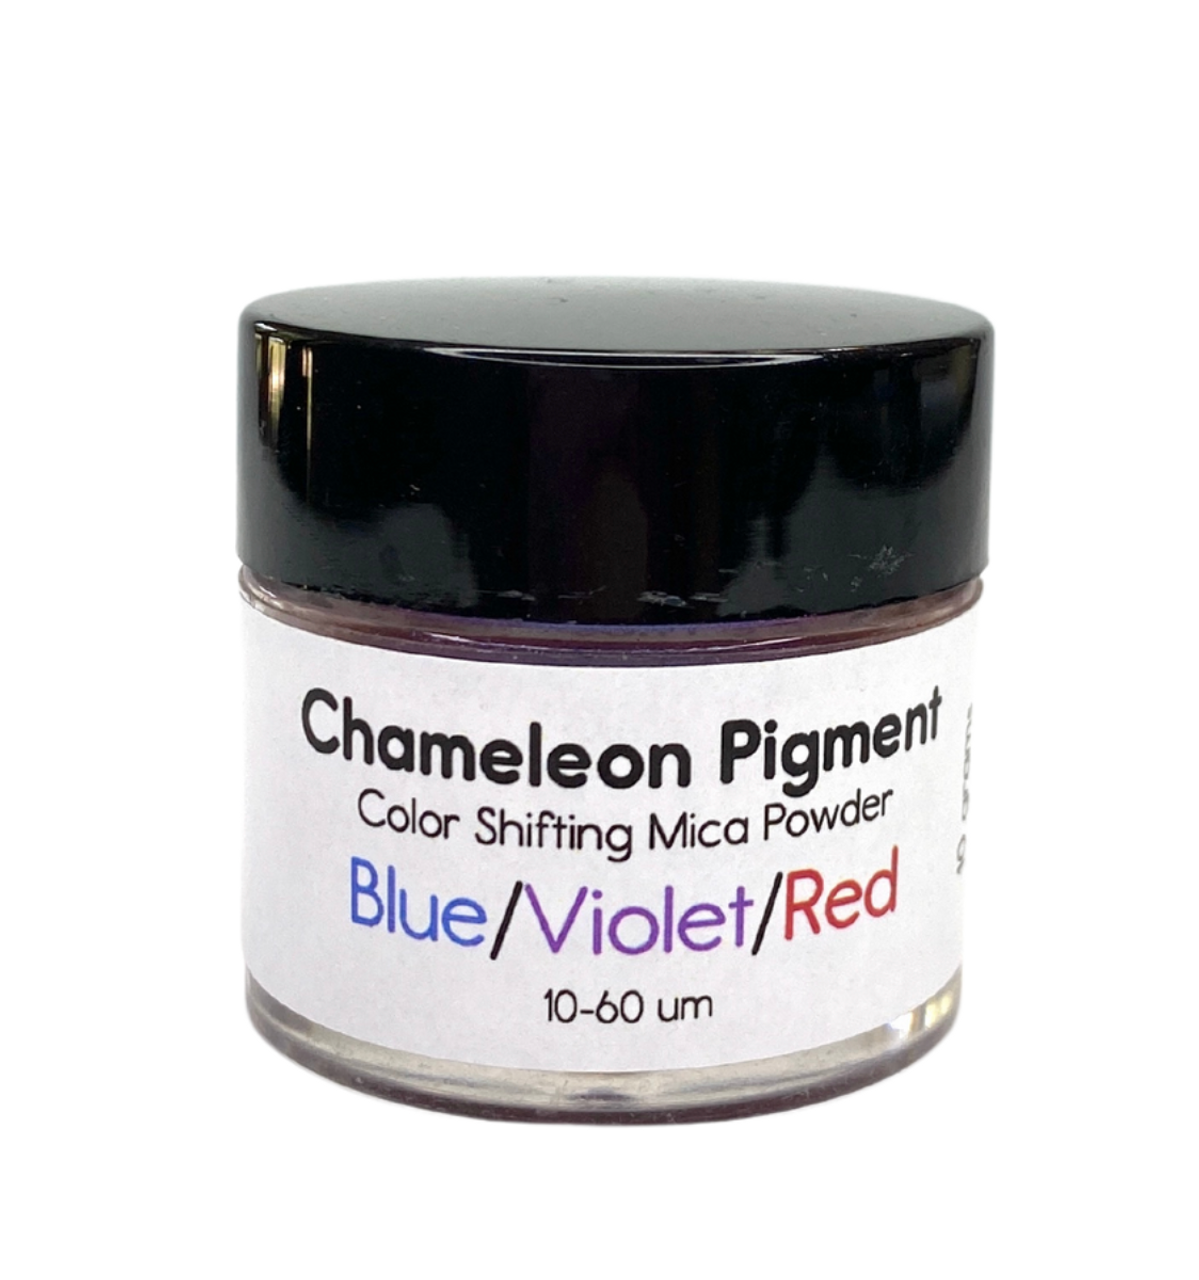 Chameleon Pigment - Blue/Violet/Red